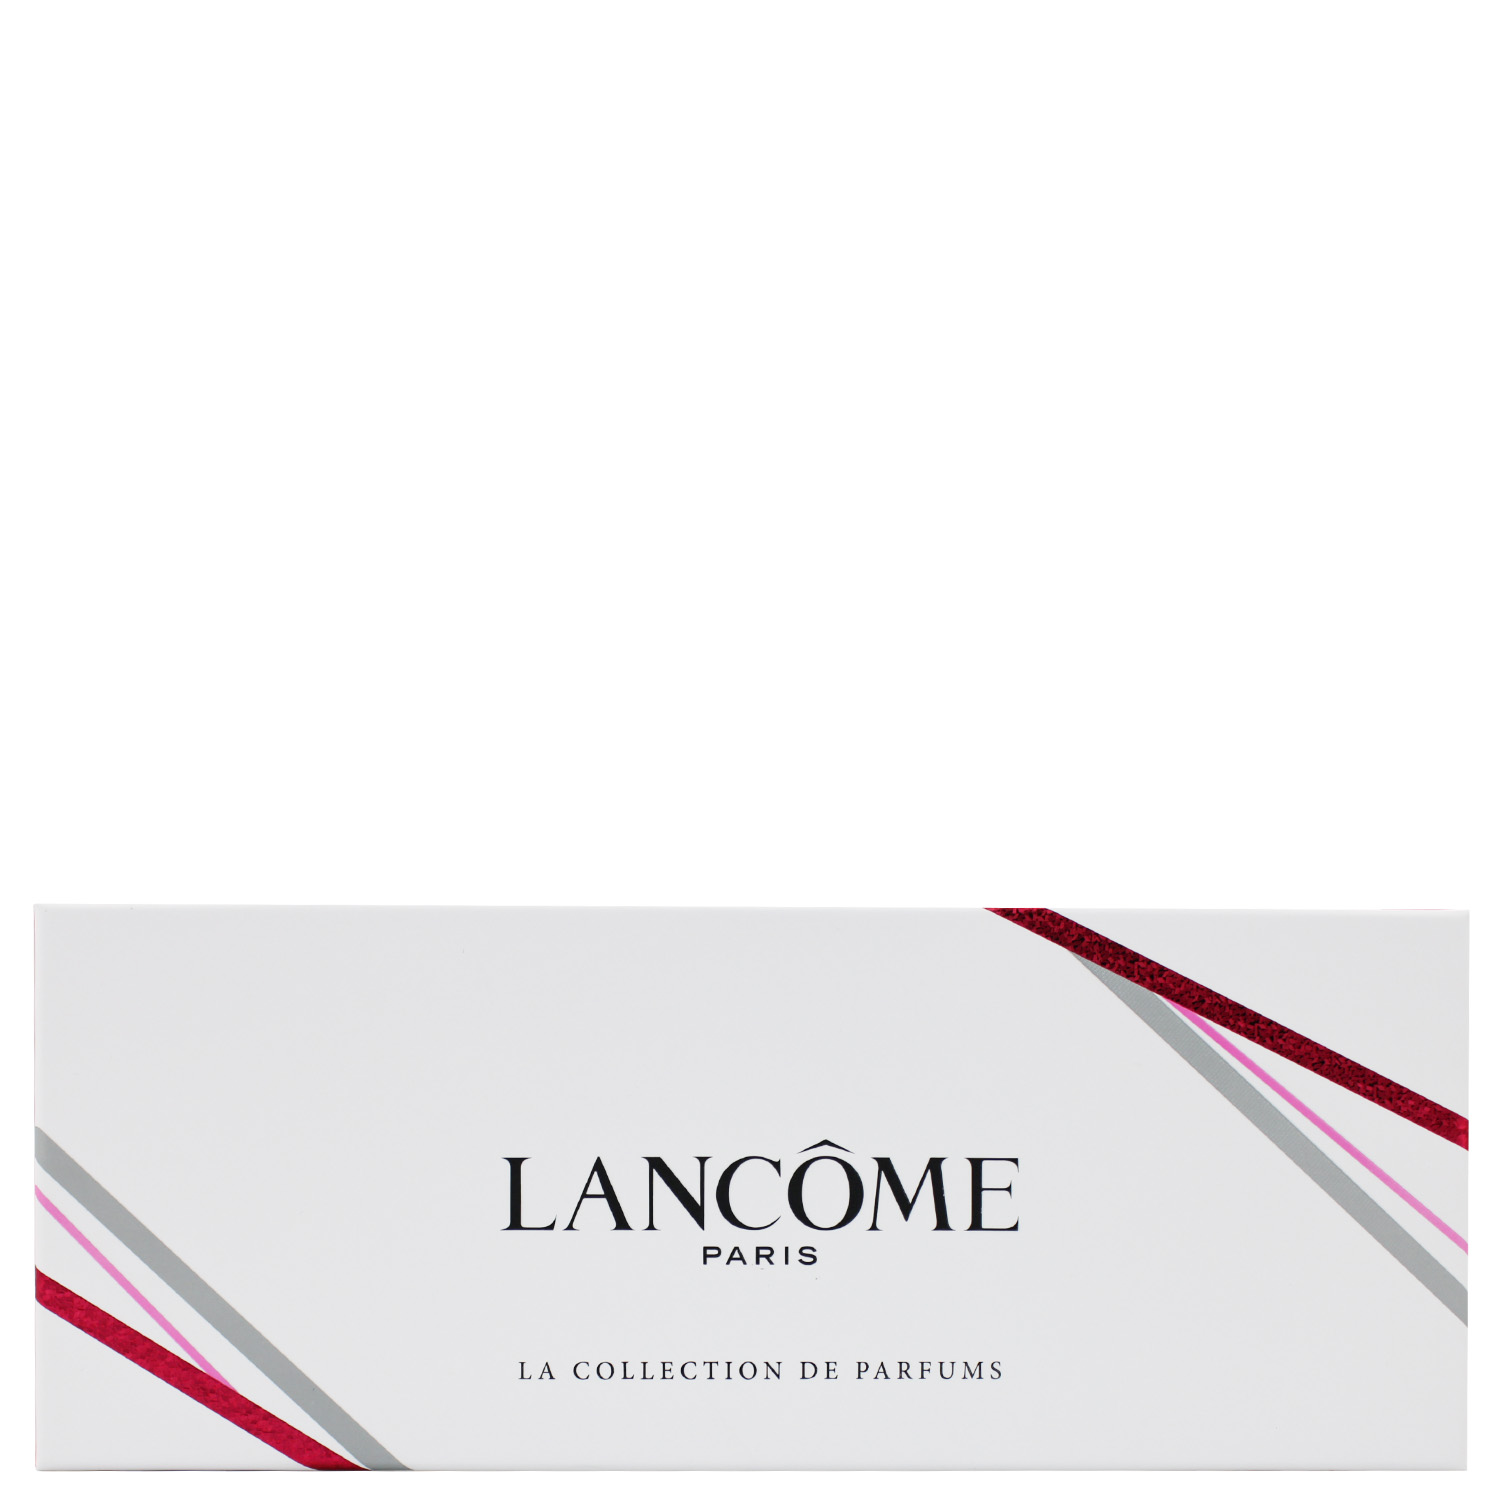 Lancôme Miniatur Collection for Women 5-teilig 